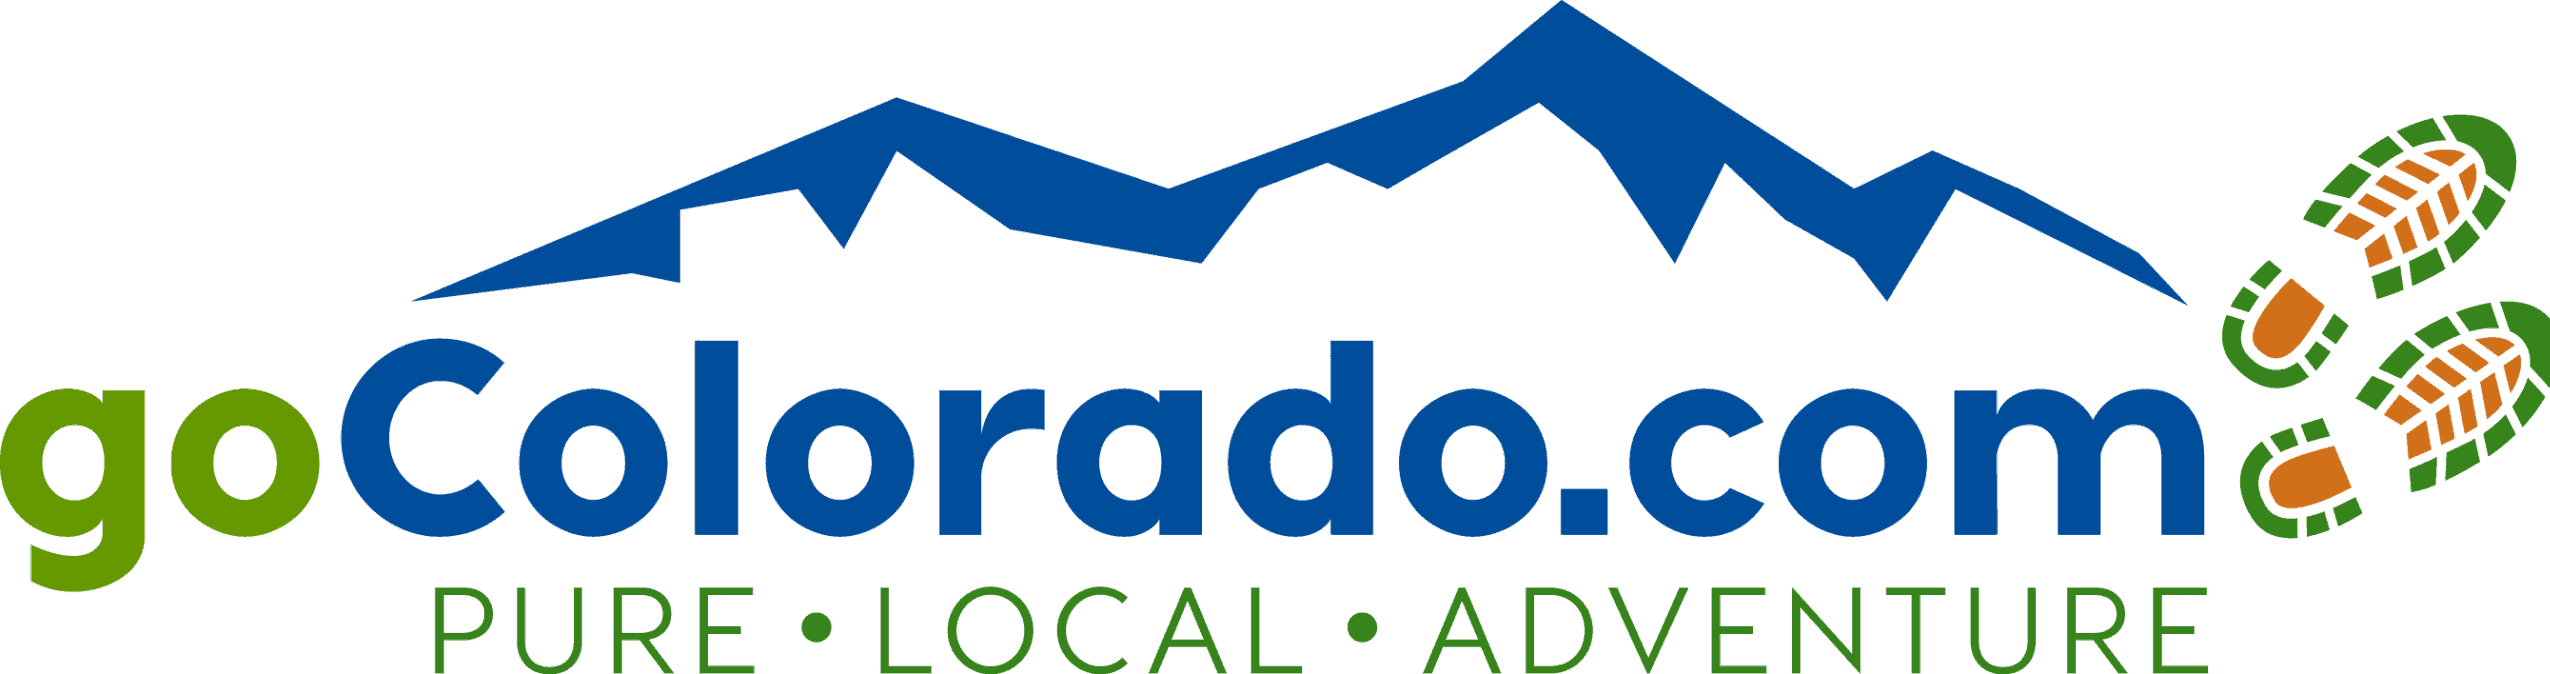 colorado tourism guide free